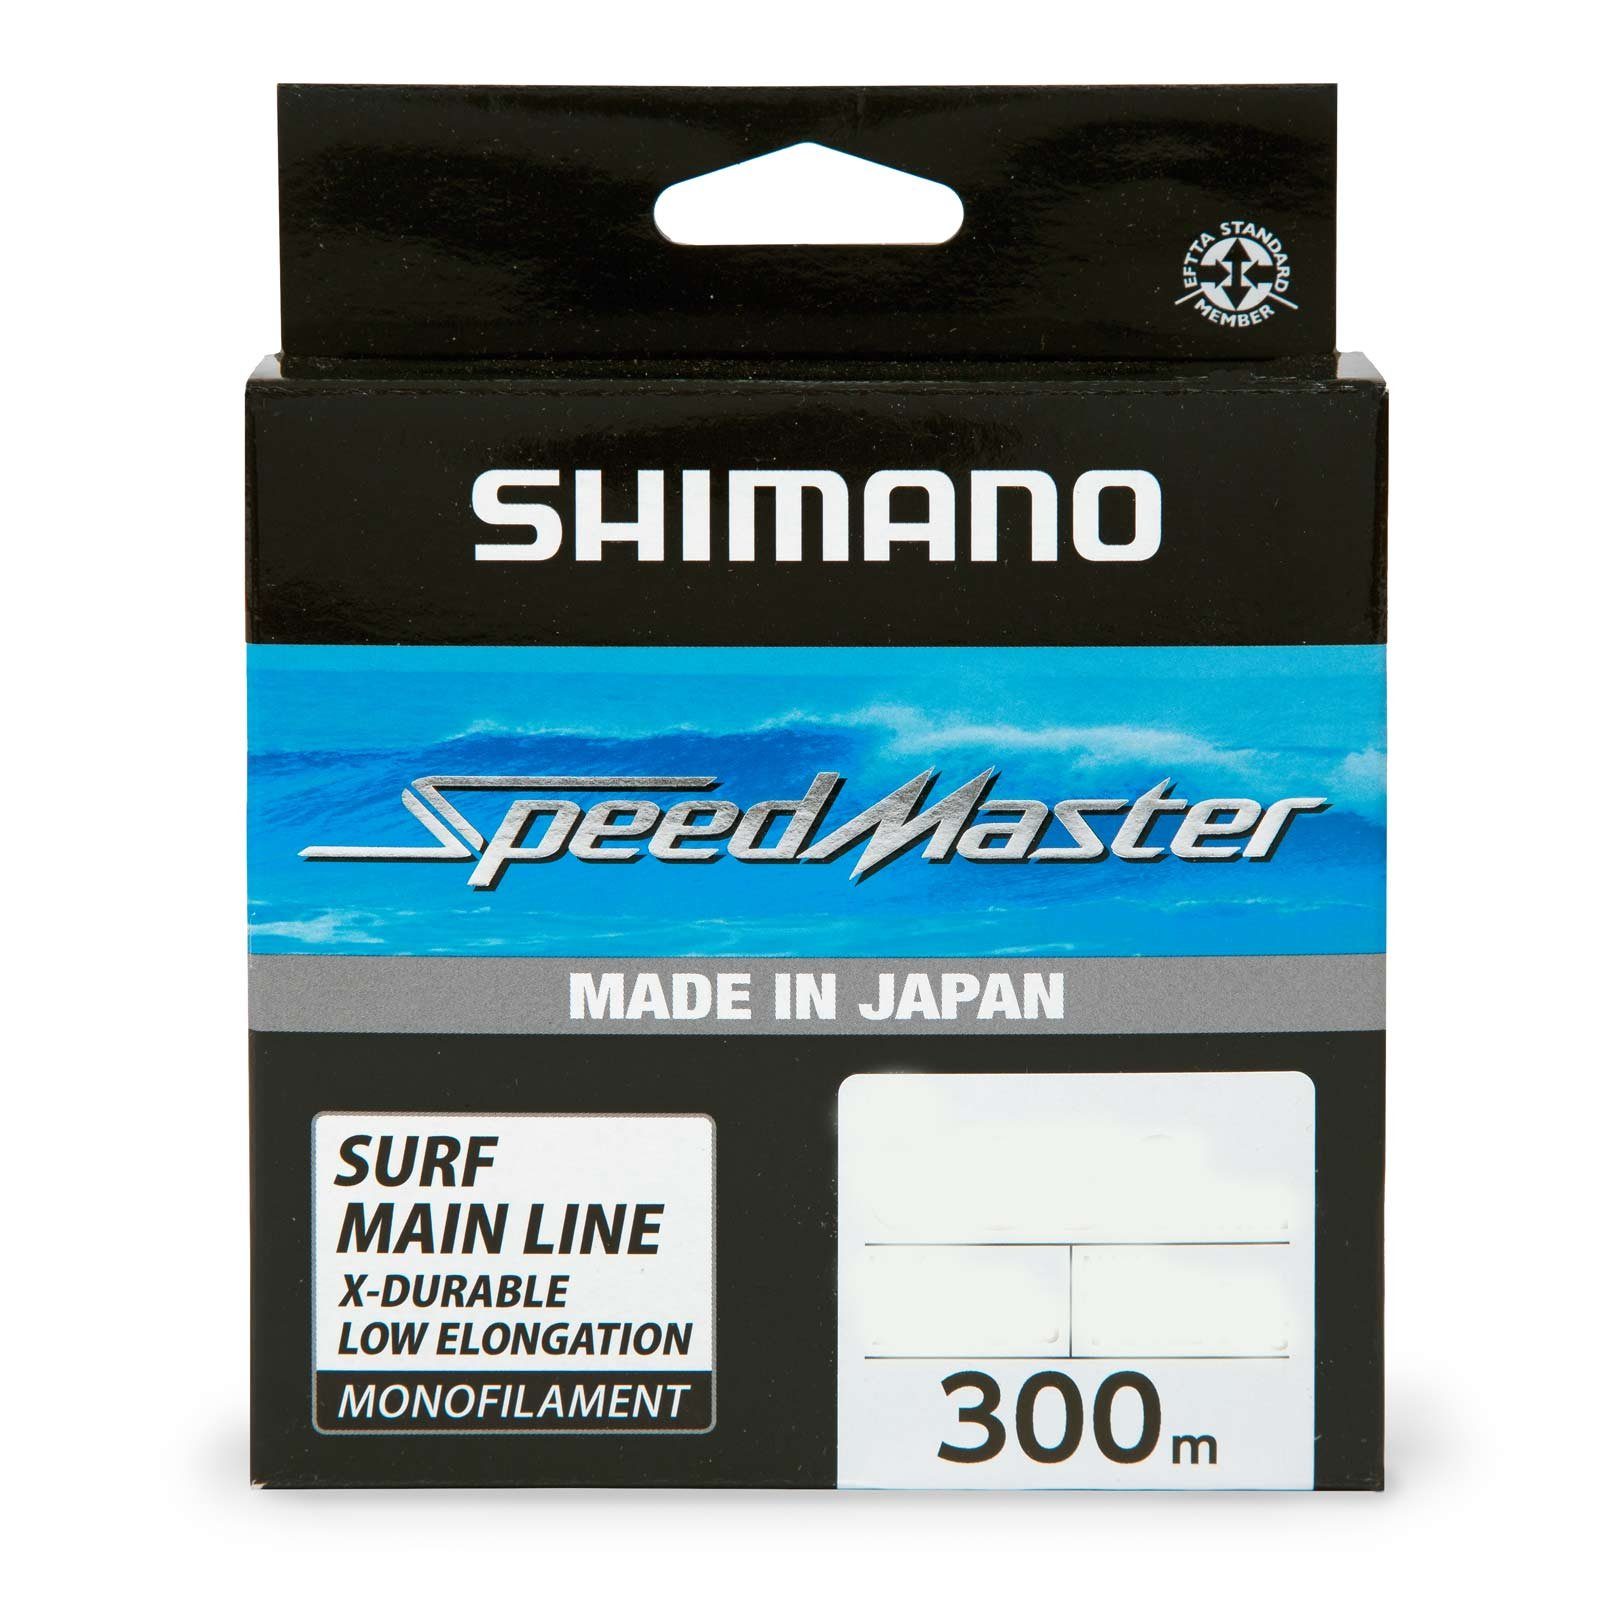 Shimano Angelschnur, 300 m Länge, Shimano Speedmaster Surf Mono 300m 0,30mm/7,95kg monofile Angelschnur